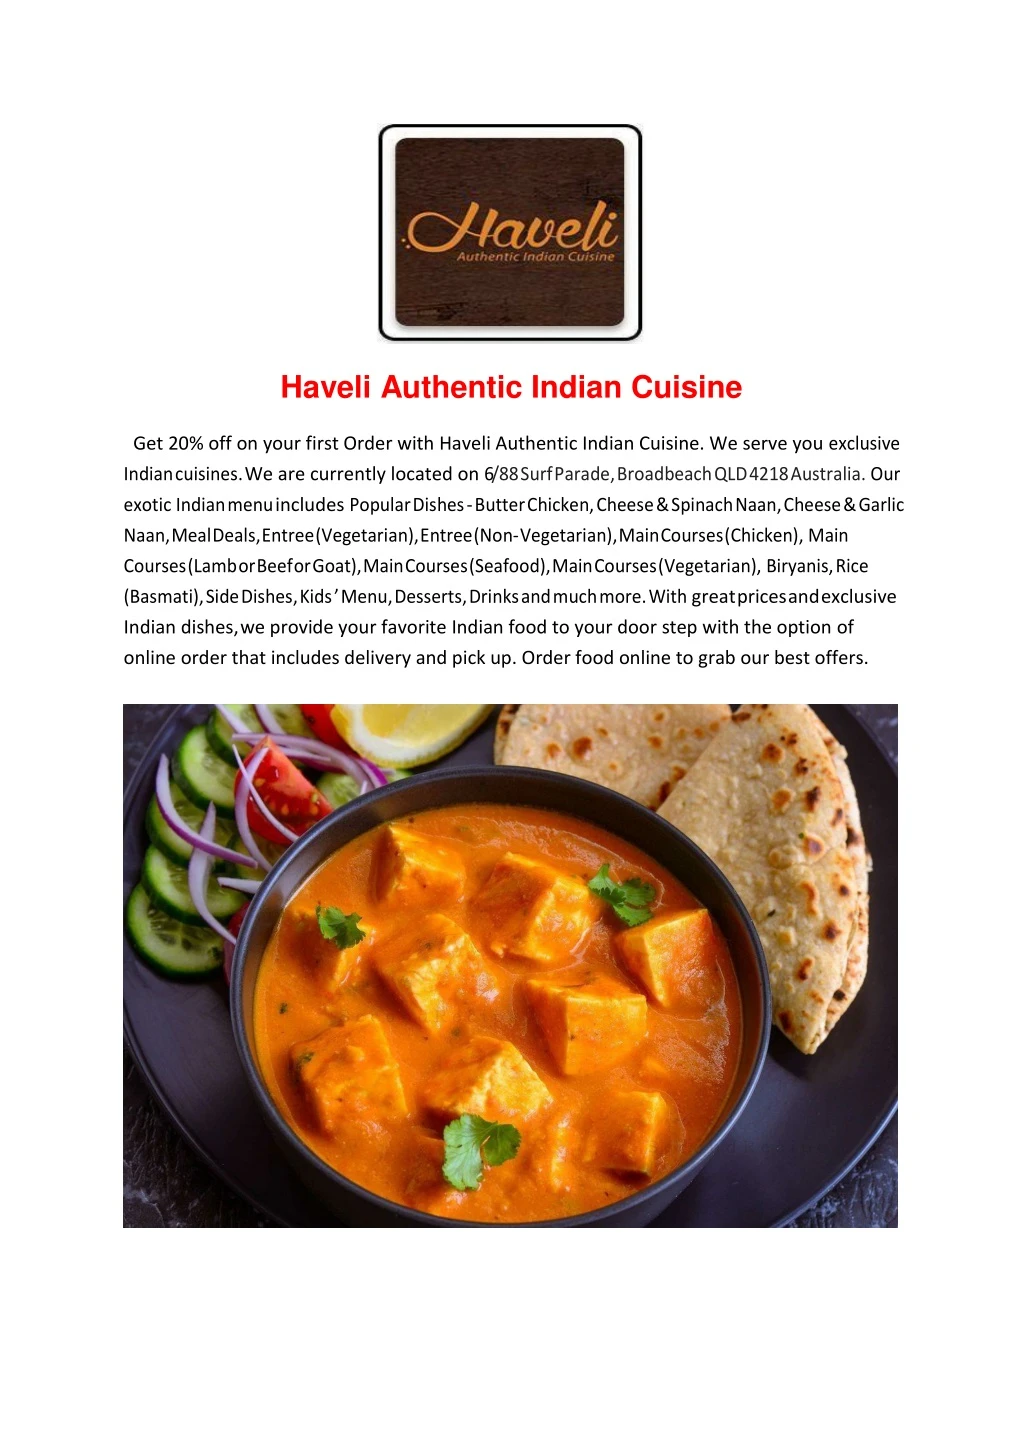 haveli authentic indian cuisine